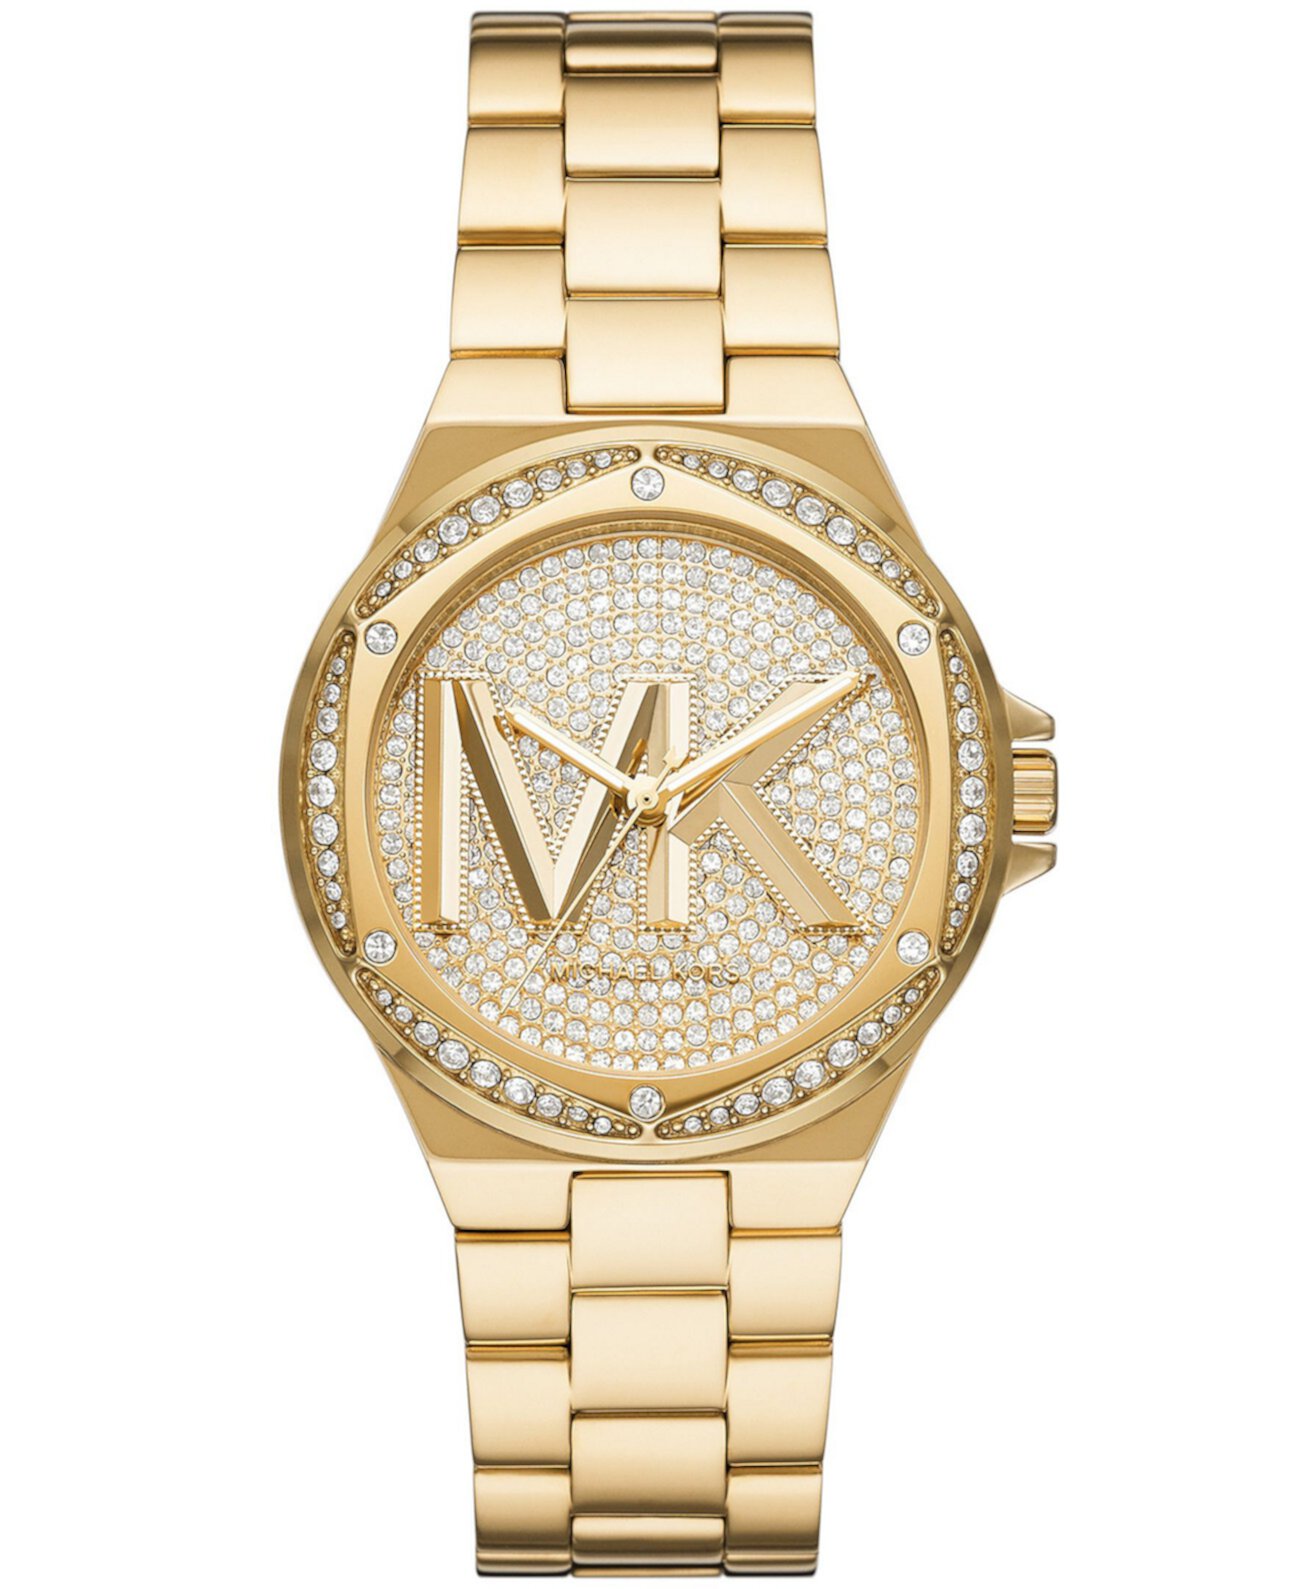 Женские часы Lennox с тремя стрелками и золотым браслетом из нержавеющей стали 37 мм Michael Kors